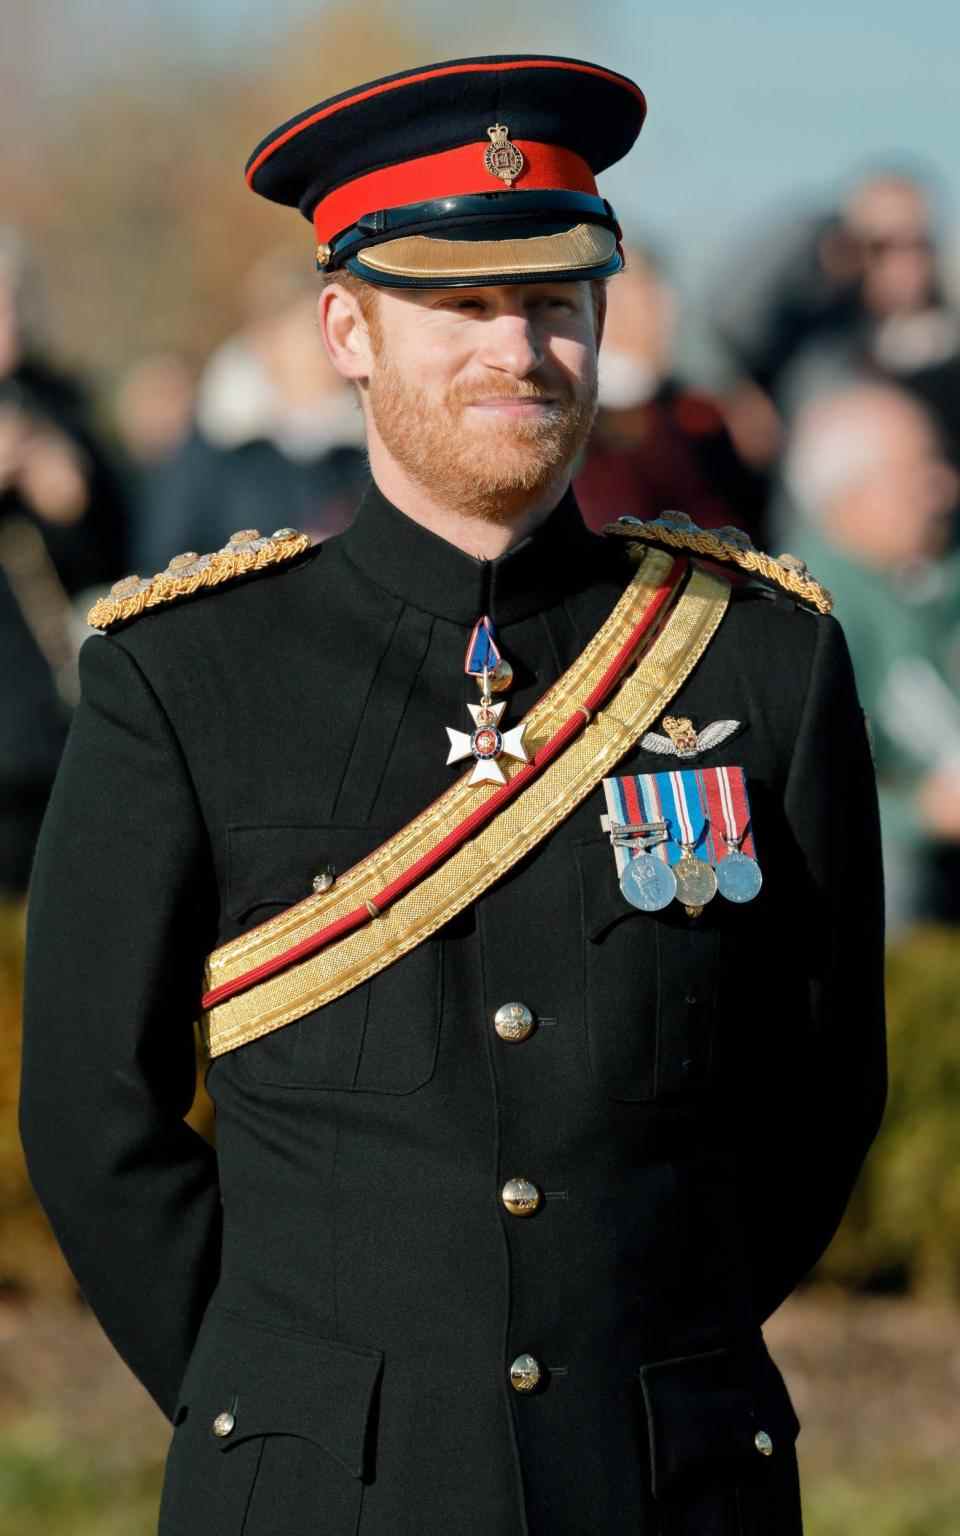 Le duc a été interdit de porter son uniforme militaire pour les événements publics parce qu'il n'est pas un membre actif de la famille royale - Max Mumby/Indigo/Getty Images Europe